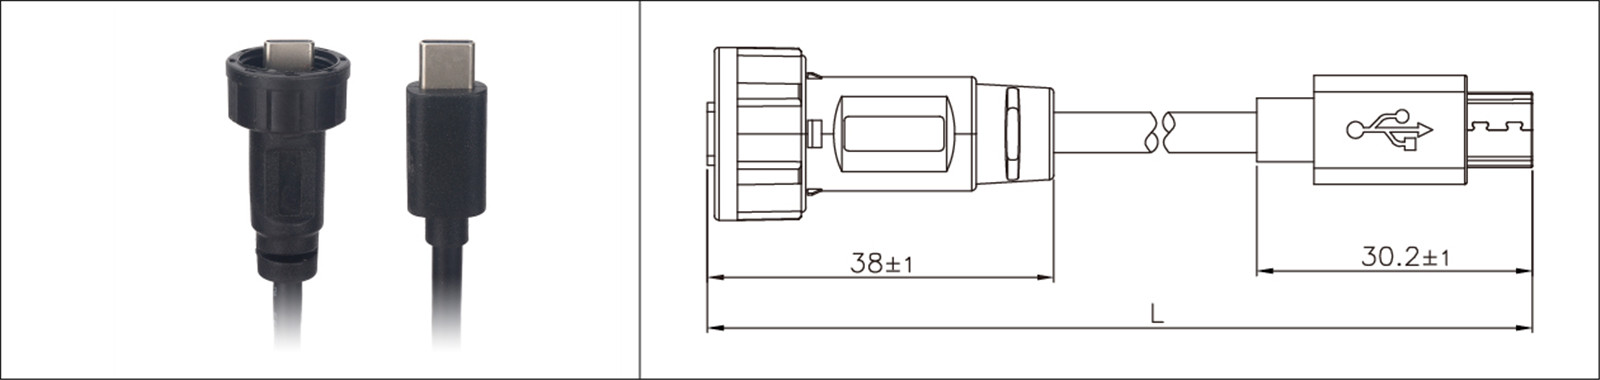 Micro-USB-Panelmontage Typ 2.0 3.0 Buchse und Stecker, wasserdicht IP67 umspritztes Verlängerungskabel Industrial Connecto-02 (14)